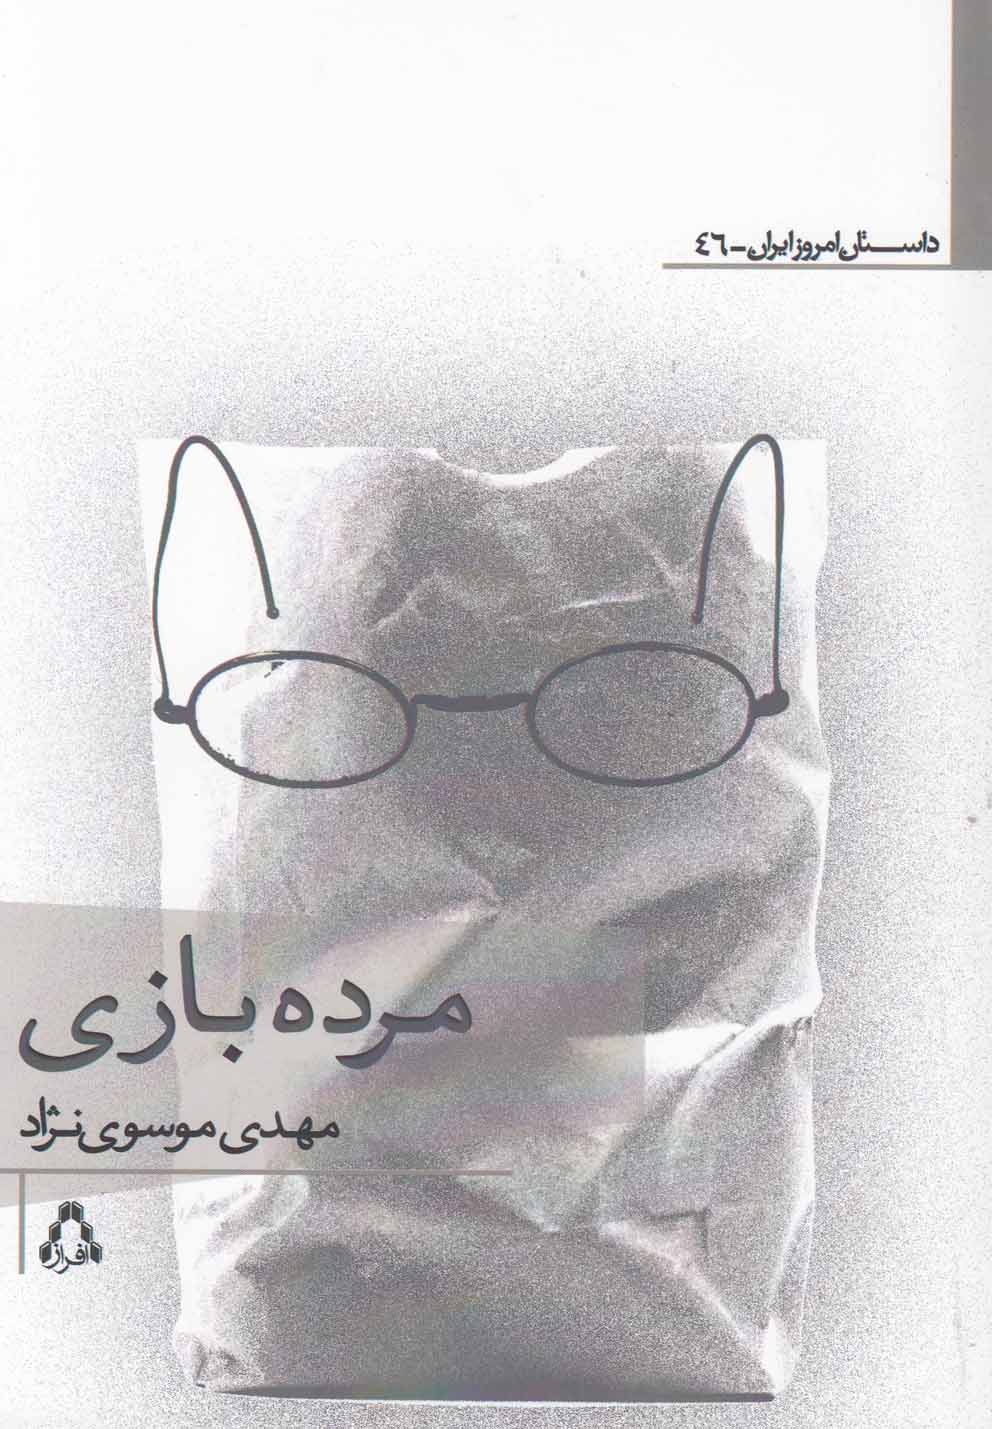 داستان امروز ایران46 (مرده بازی)